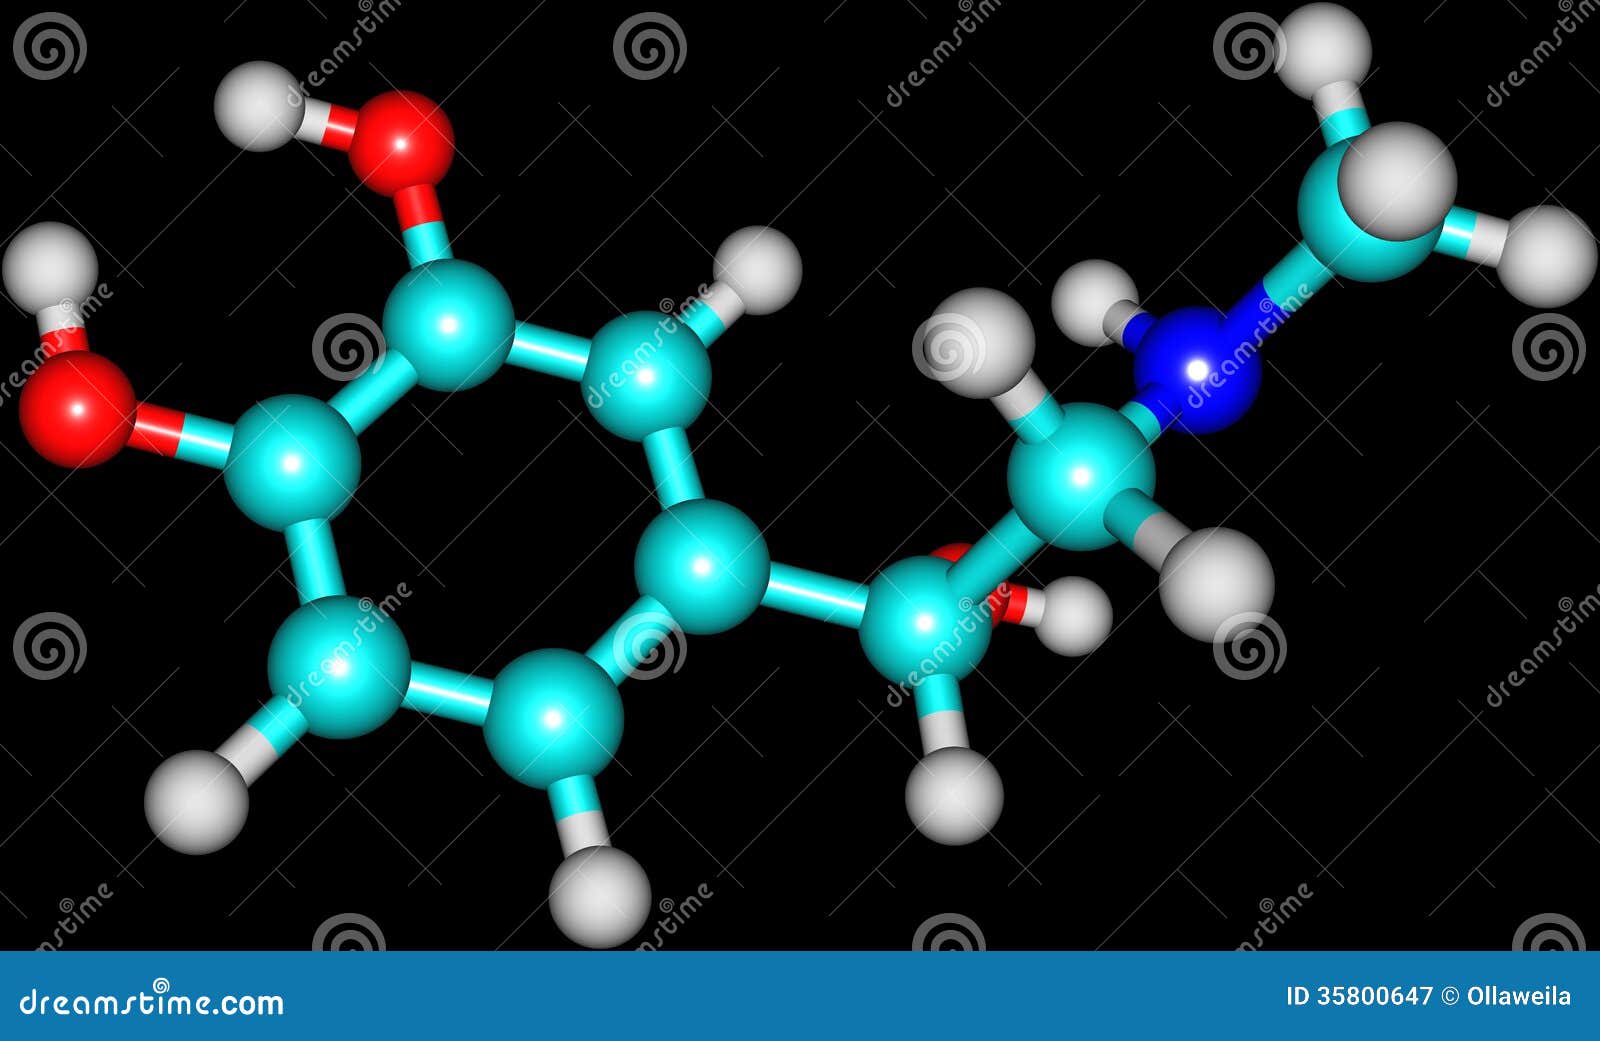 adrenaline molecule